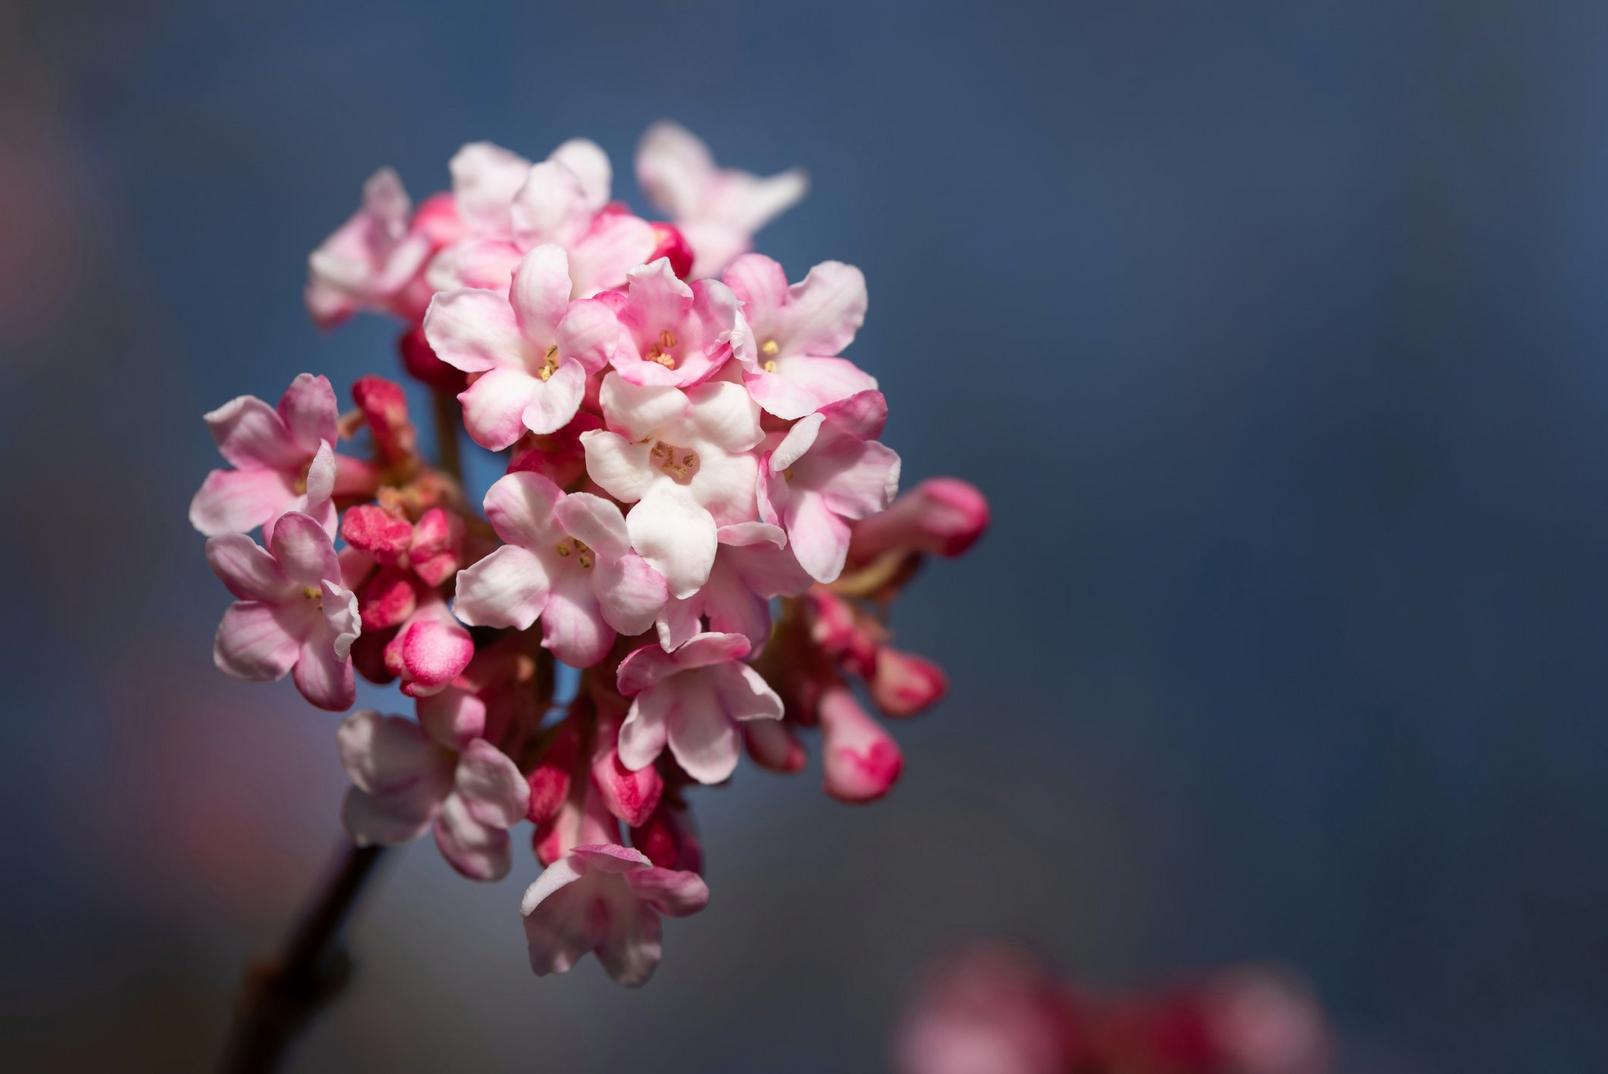 Viburnum-flowers